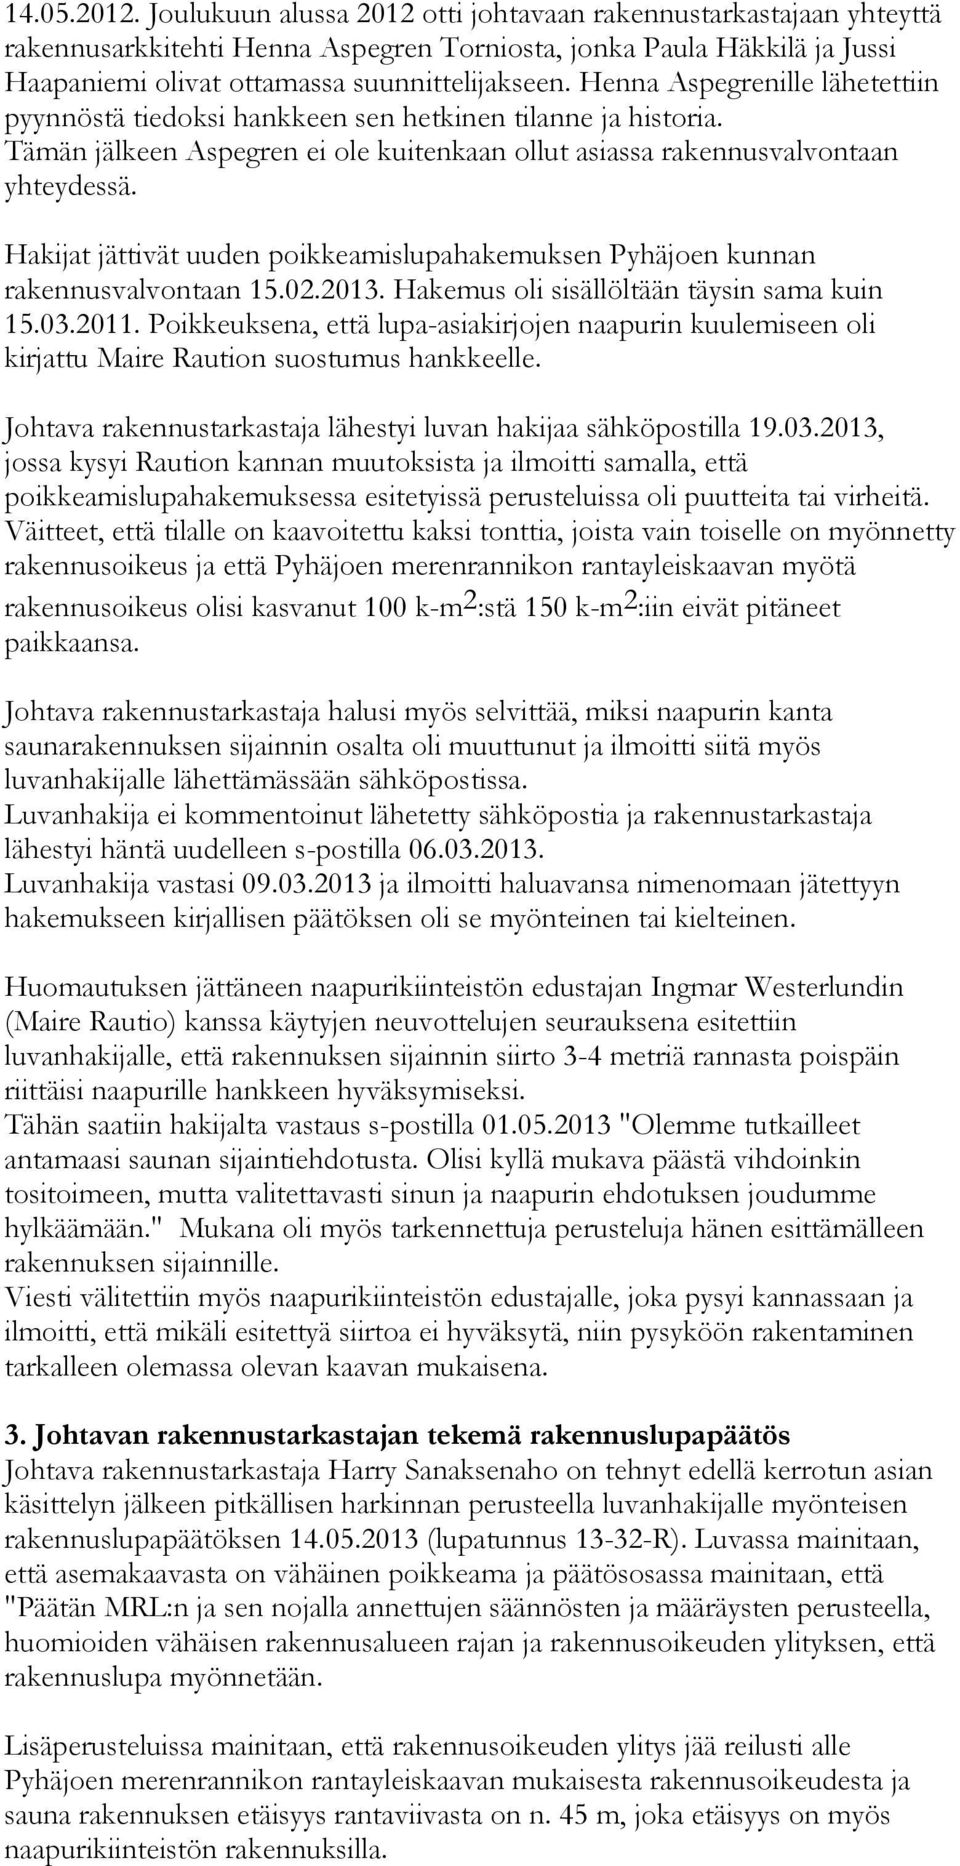 Hakijat jättivät uuden poikkeamislupahakemuksen Pyhäjoen kunnan rakennusvalvontaan 15.02.2013. Hakemus oli sisällöltään täysin sama kuin 15.03.2011.